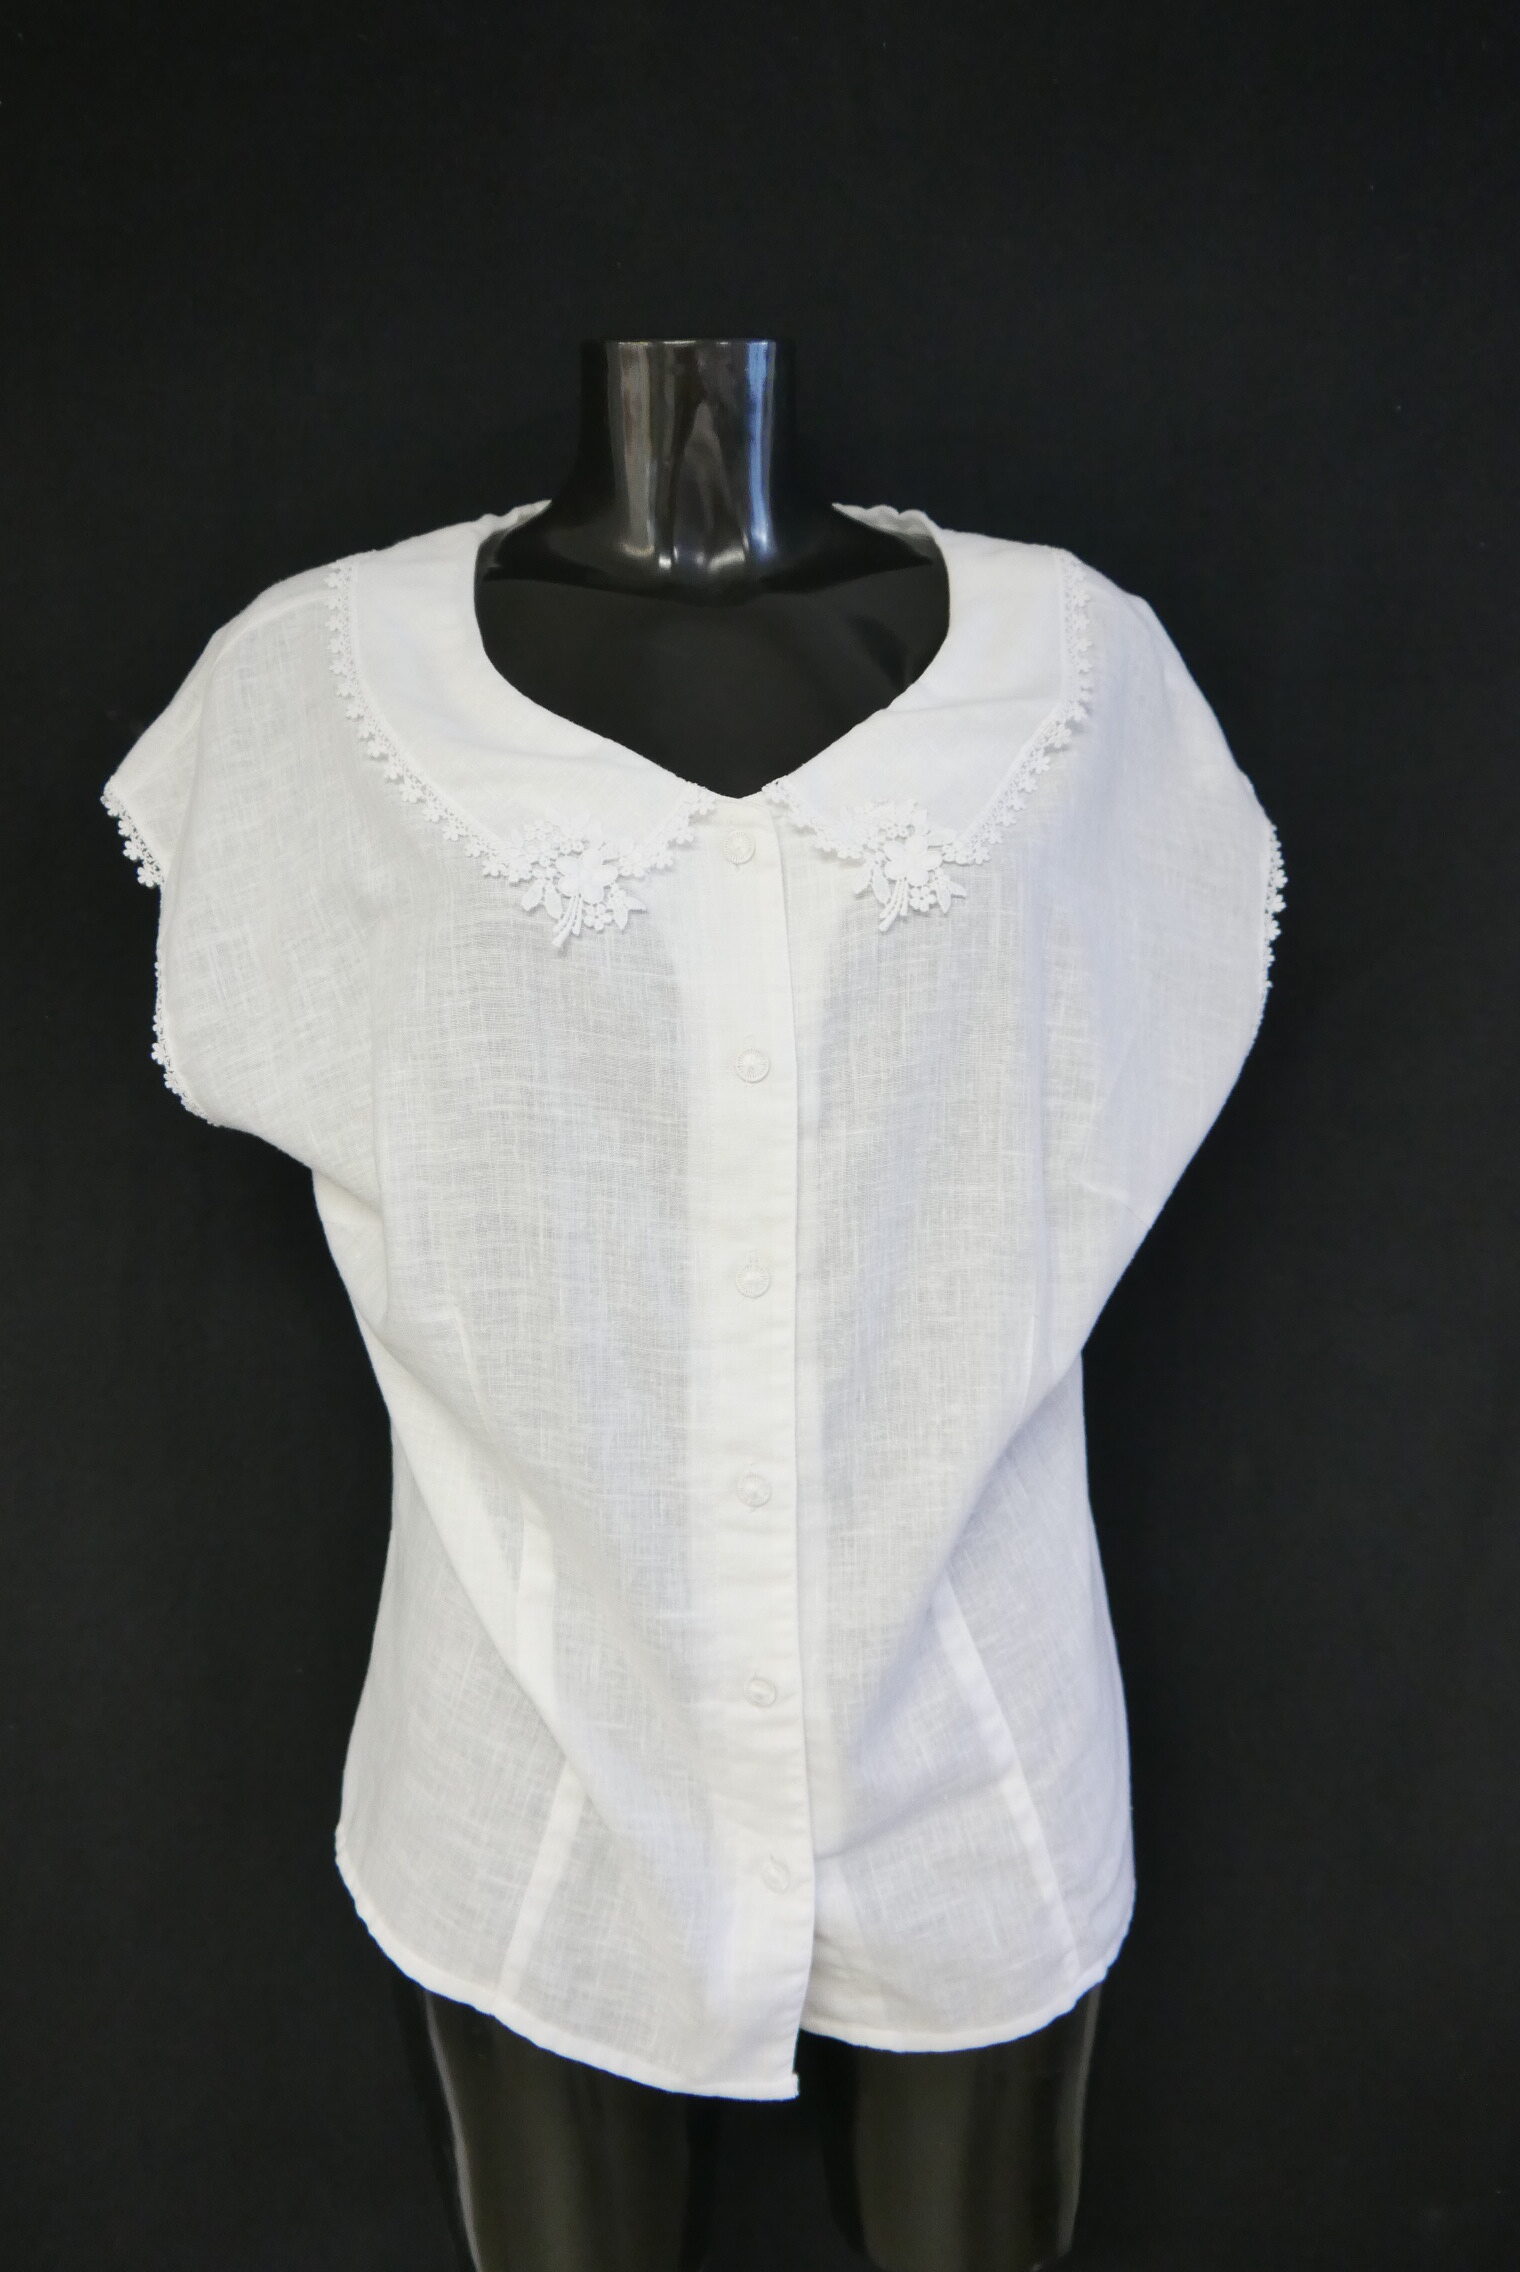 Gr.50 Trachtenbluse weiß Bluse für Dirndl Baumwollmischung ärmellos TB9592